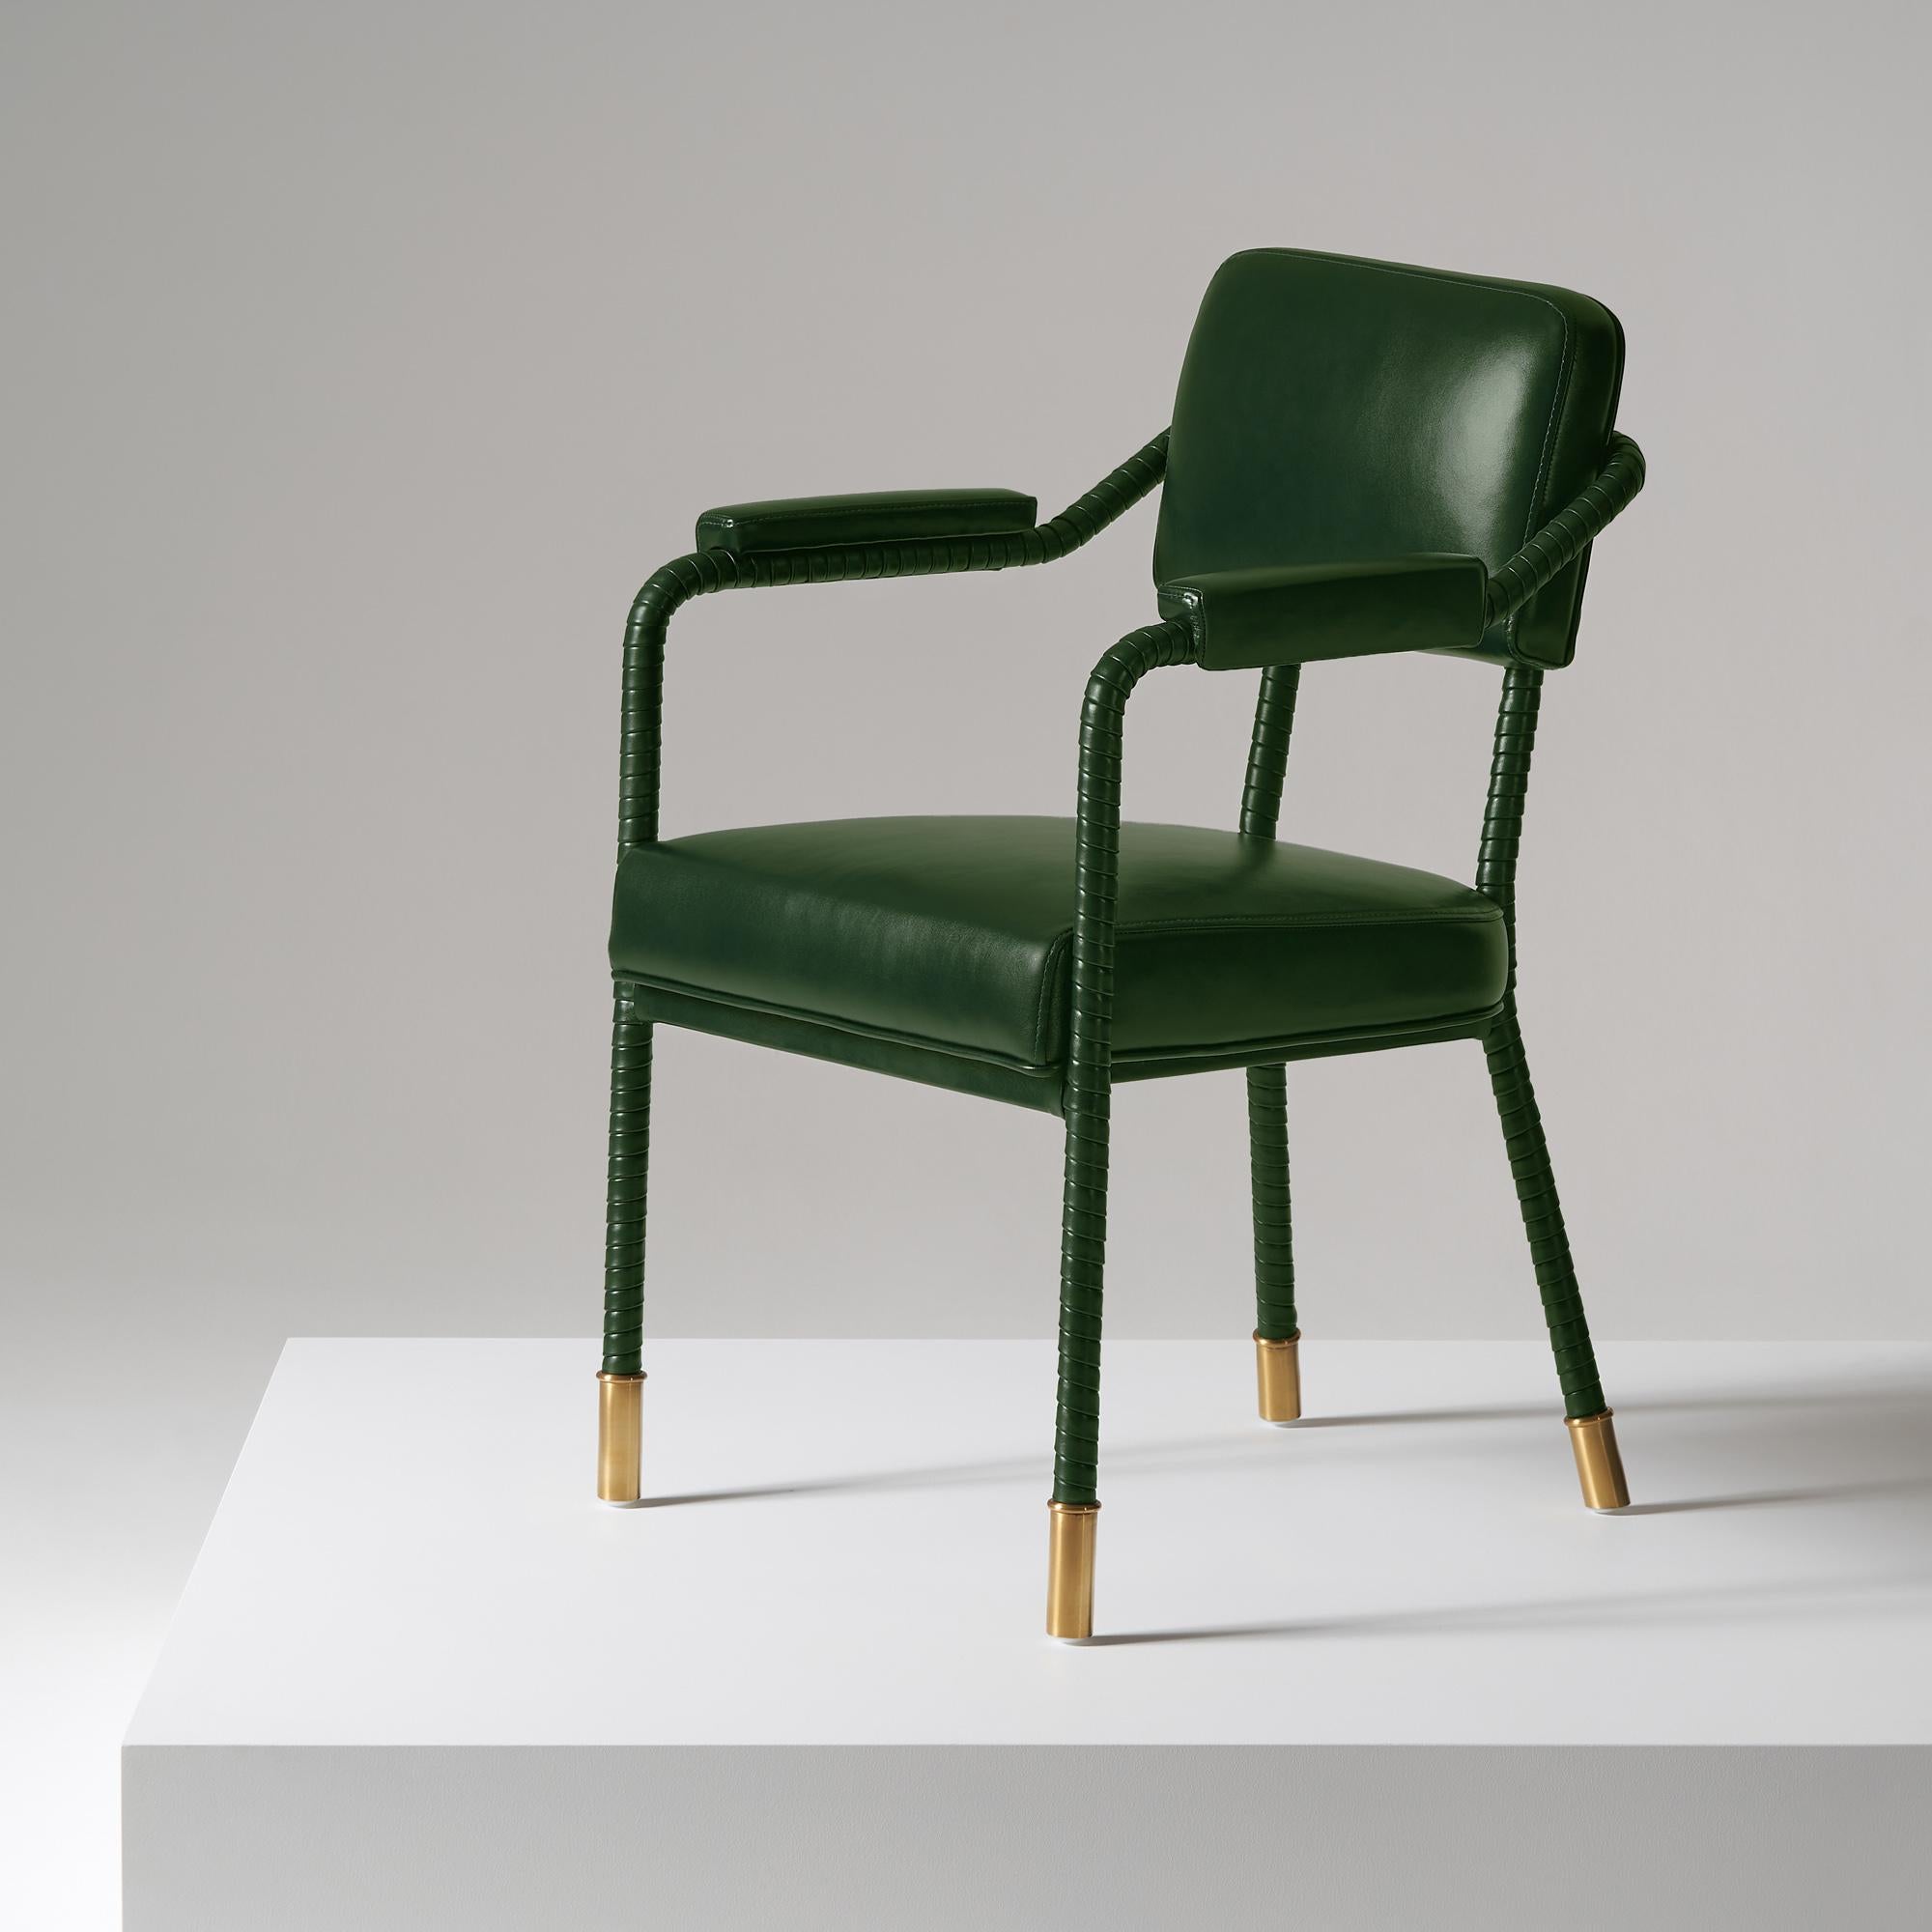 And Objects, ein von Martin Brudnizki und Nick Jeanes gegründetes Studio für Produktdesign mit Sitz in London.

Der Easton-Esszimmerstuhl ist ein Unikat aus Edelstahl und italienischem Leder. Handgewickeltes Leder umhüllt einen Rohrrahmen, der mit